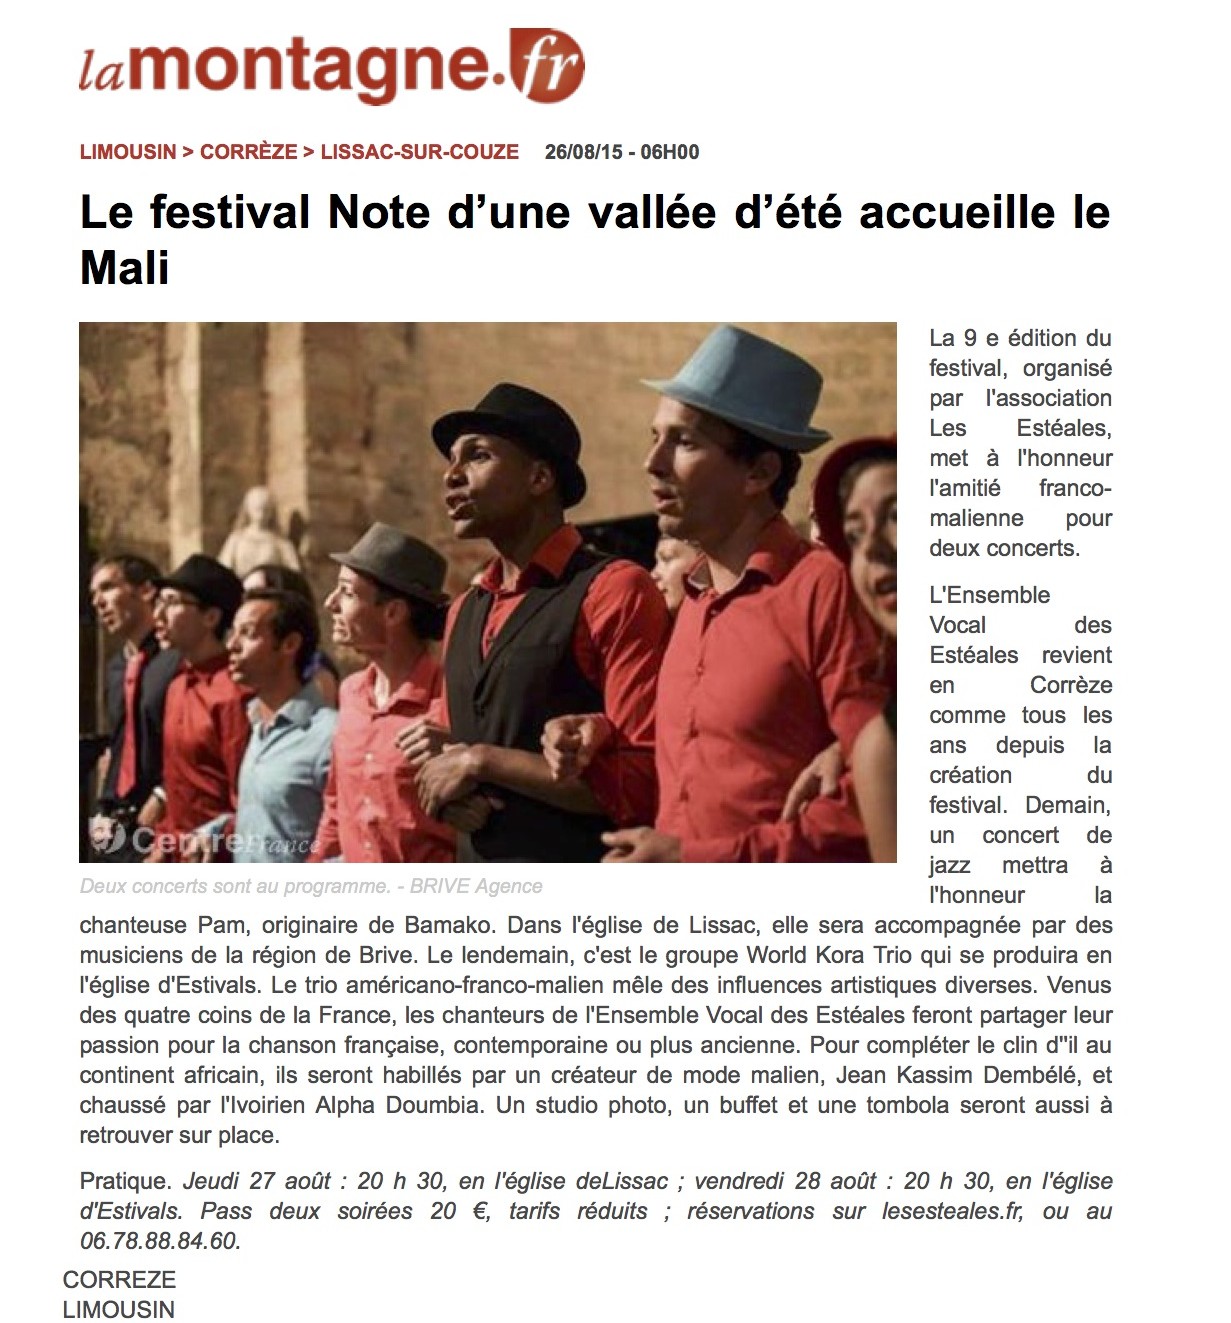 www.lamontagne.fr - Infos locales - LISSAC-SUR-COUZE (19600) - Le festival Note d’une vallée d’été accueille le Mali